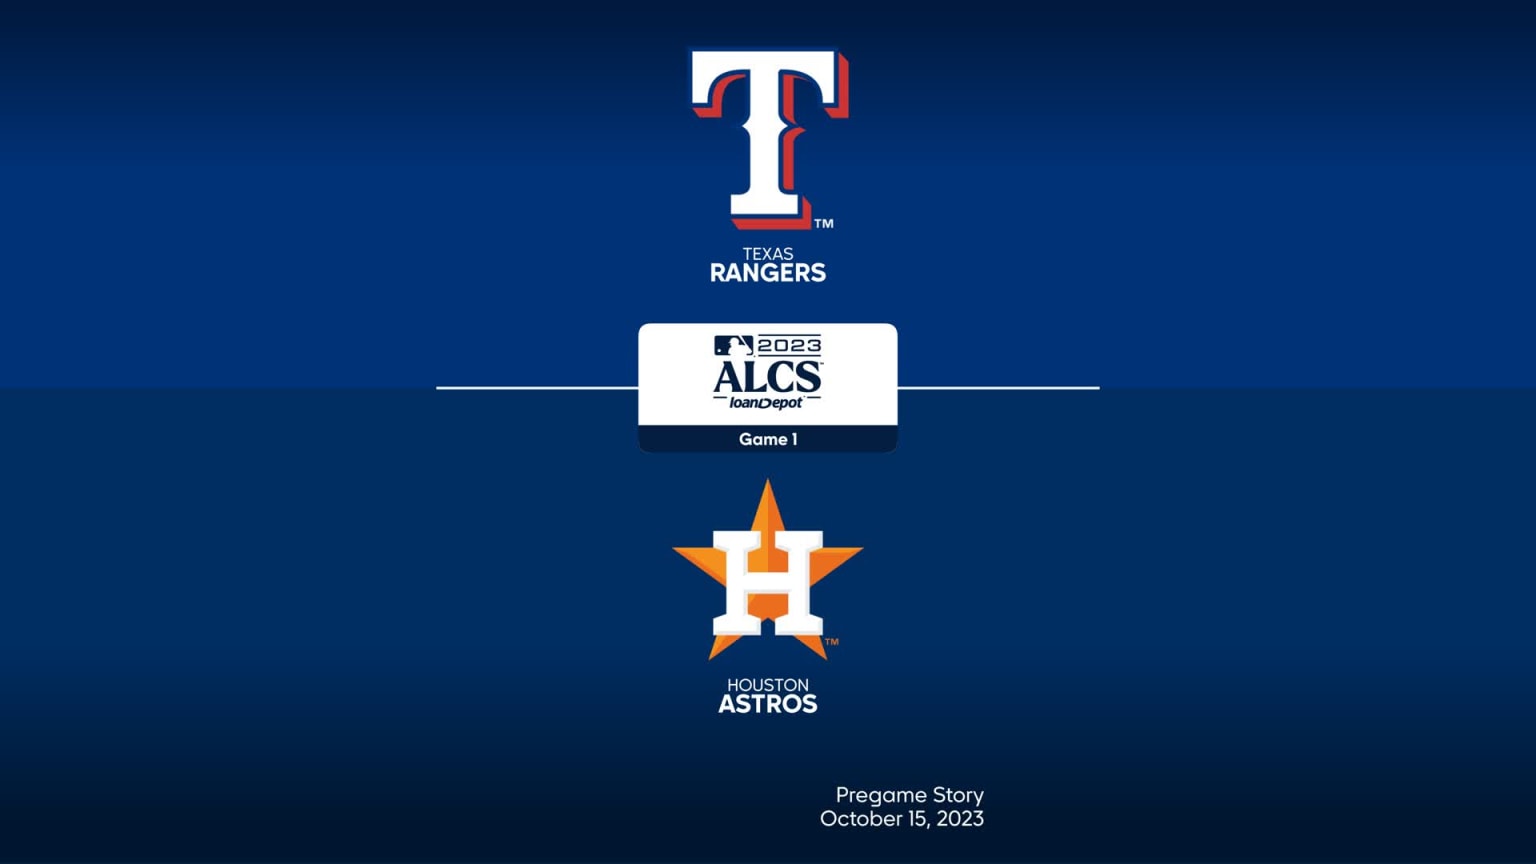 Texas Rangers Schedule 2023